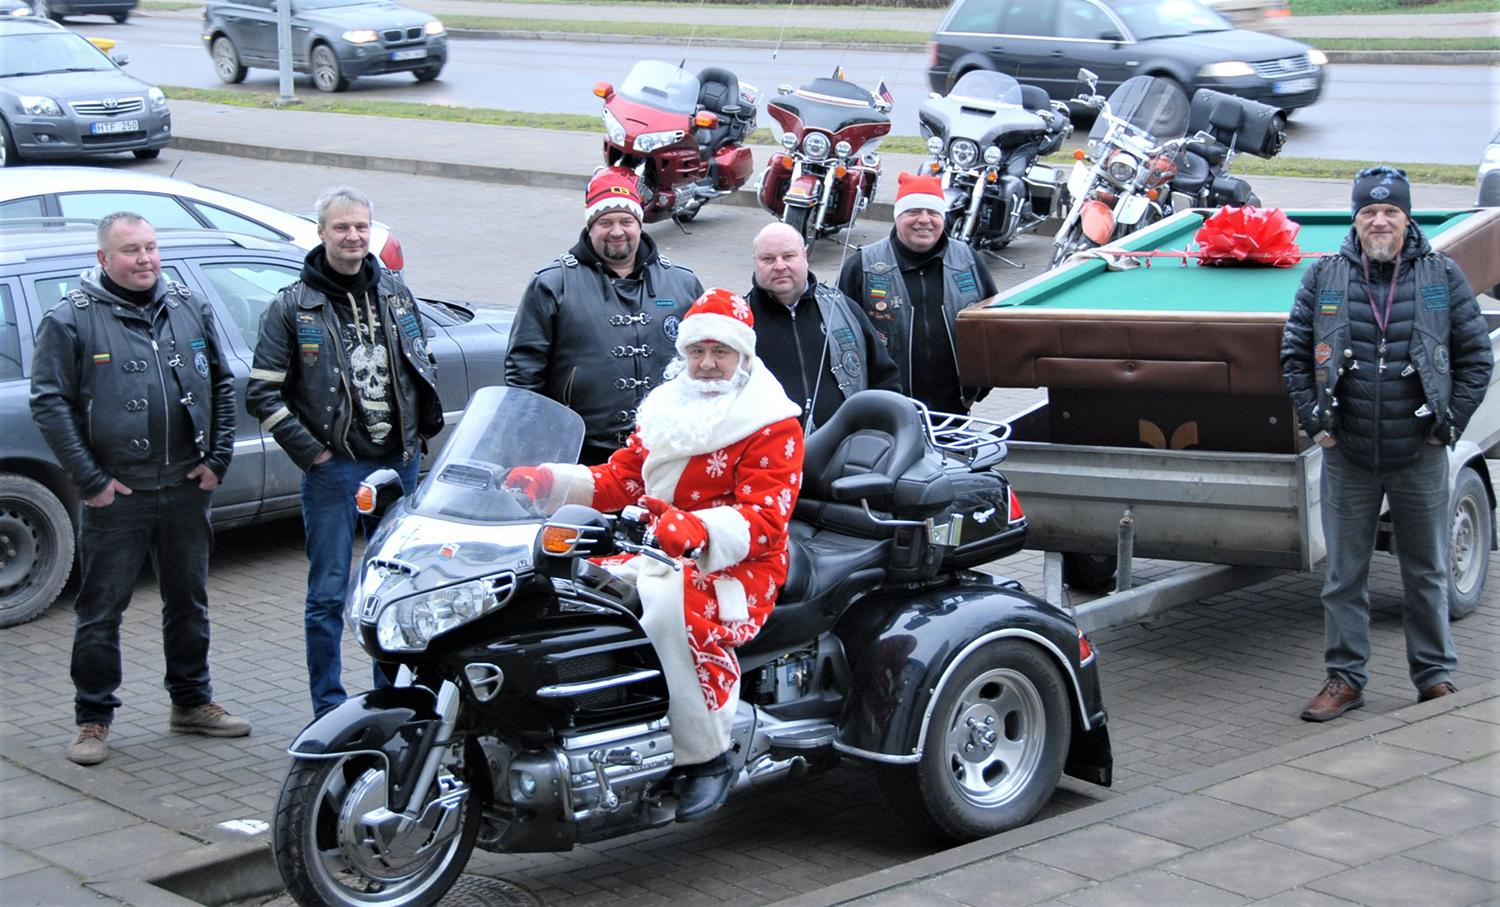 Motociklininkų dovana – nakvynės namų gyventojams / Gedimino Nemunaičio nuotr. Biliardo stalą Kalėdų Senelis vežė prie triračio motociklo prikabintoje priekaboje.